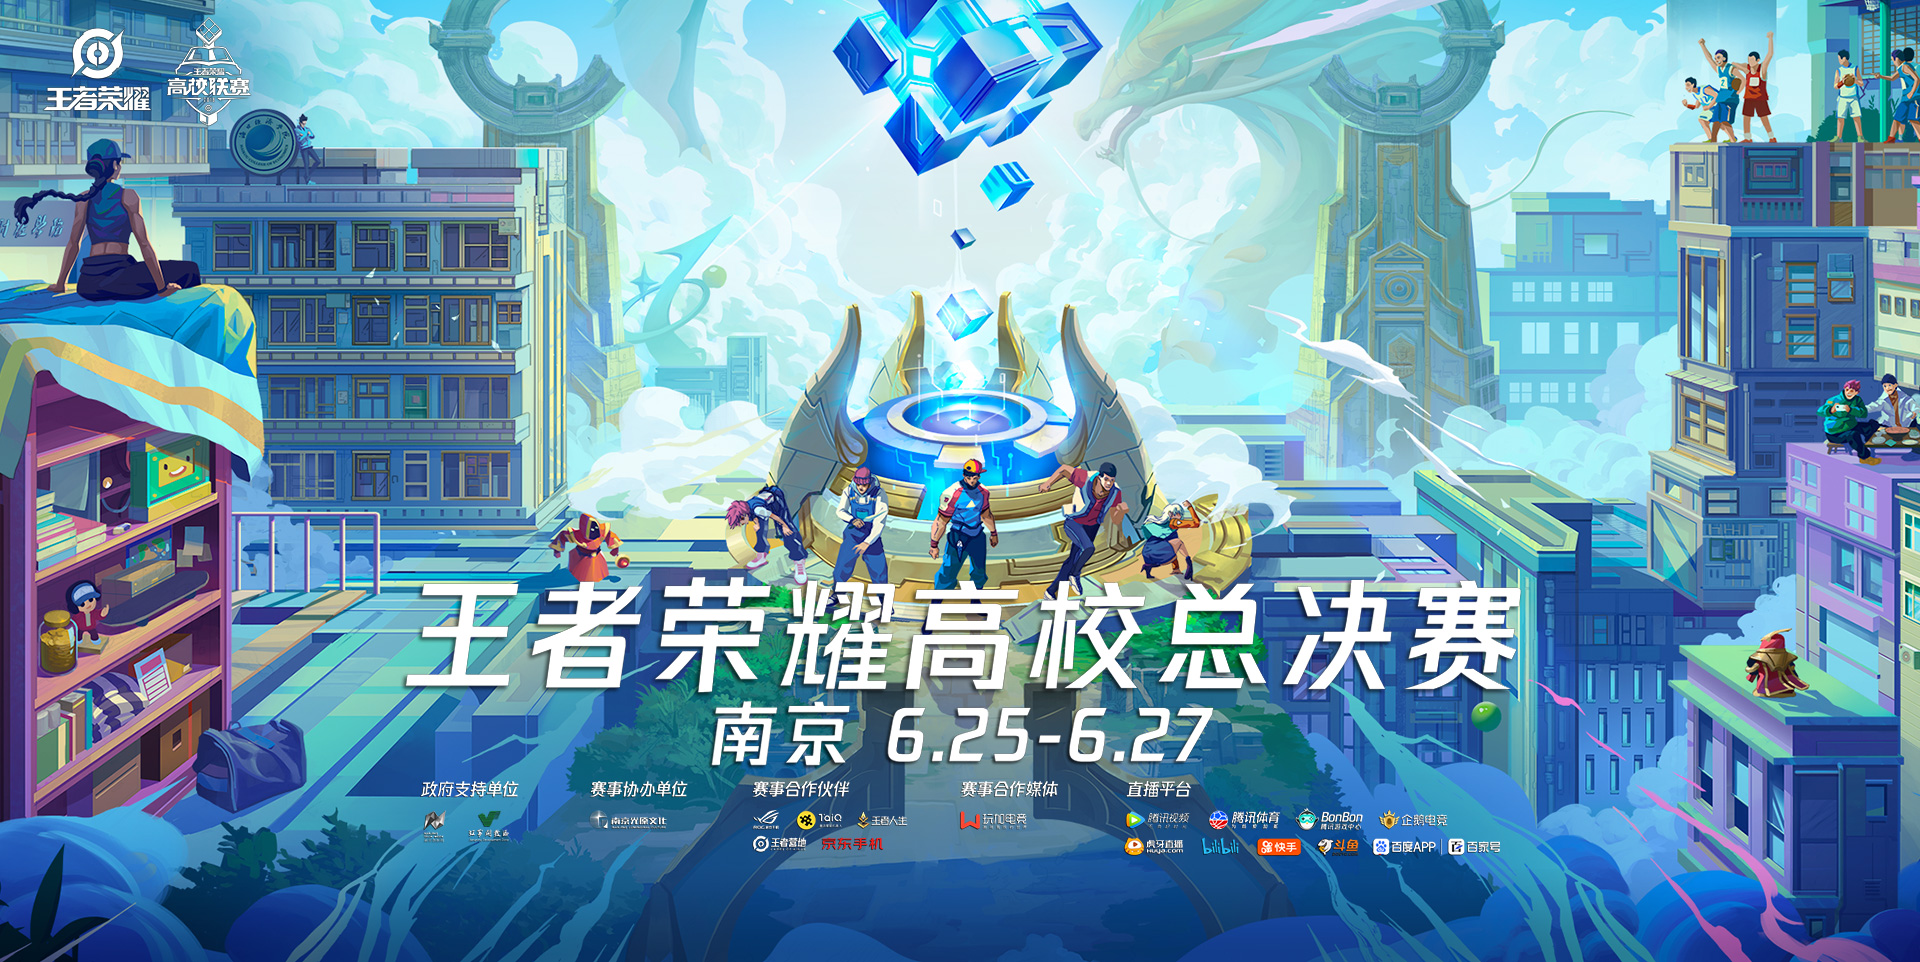 【第八届】王者荣耀高校联赛报名正式开启-王者荣耀官方网站-腾讯游戏